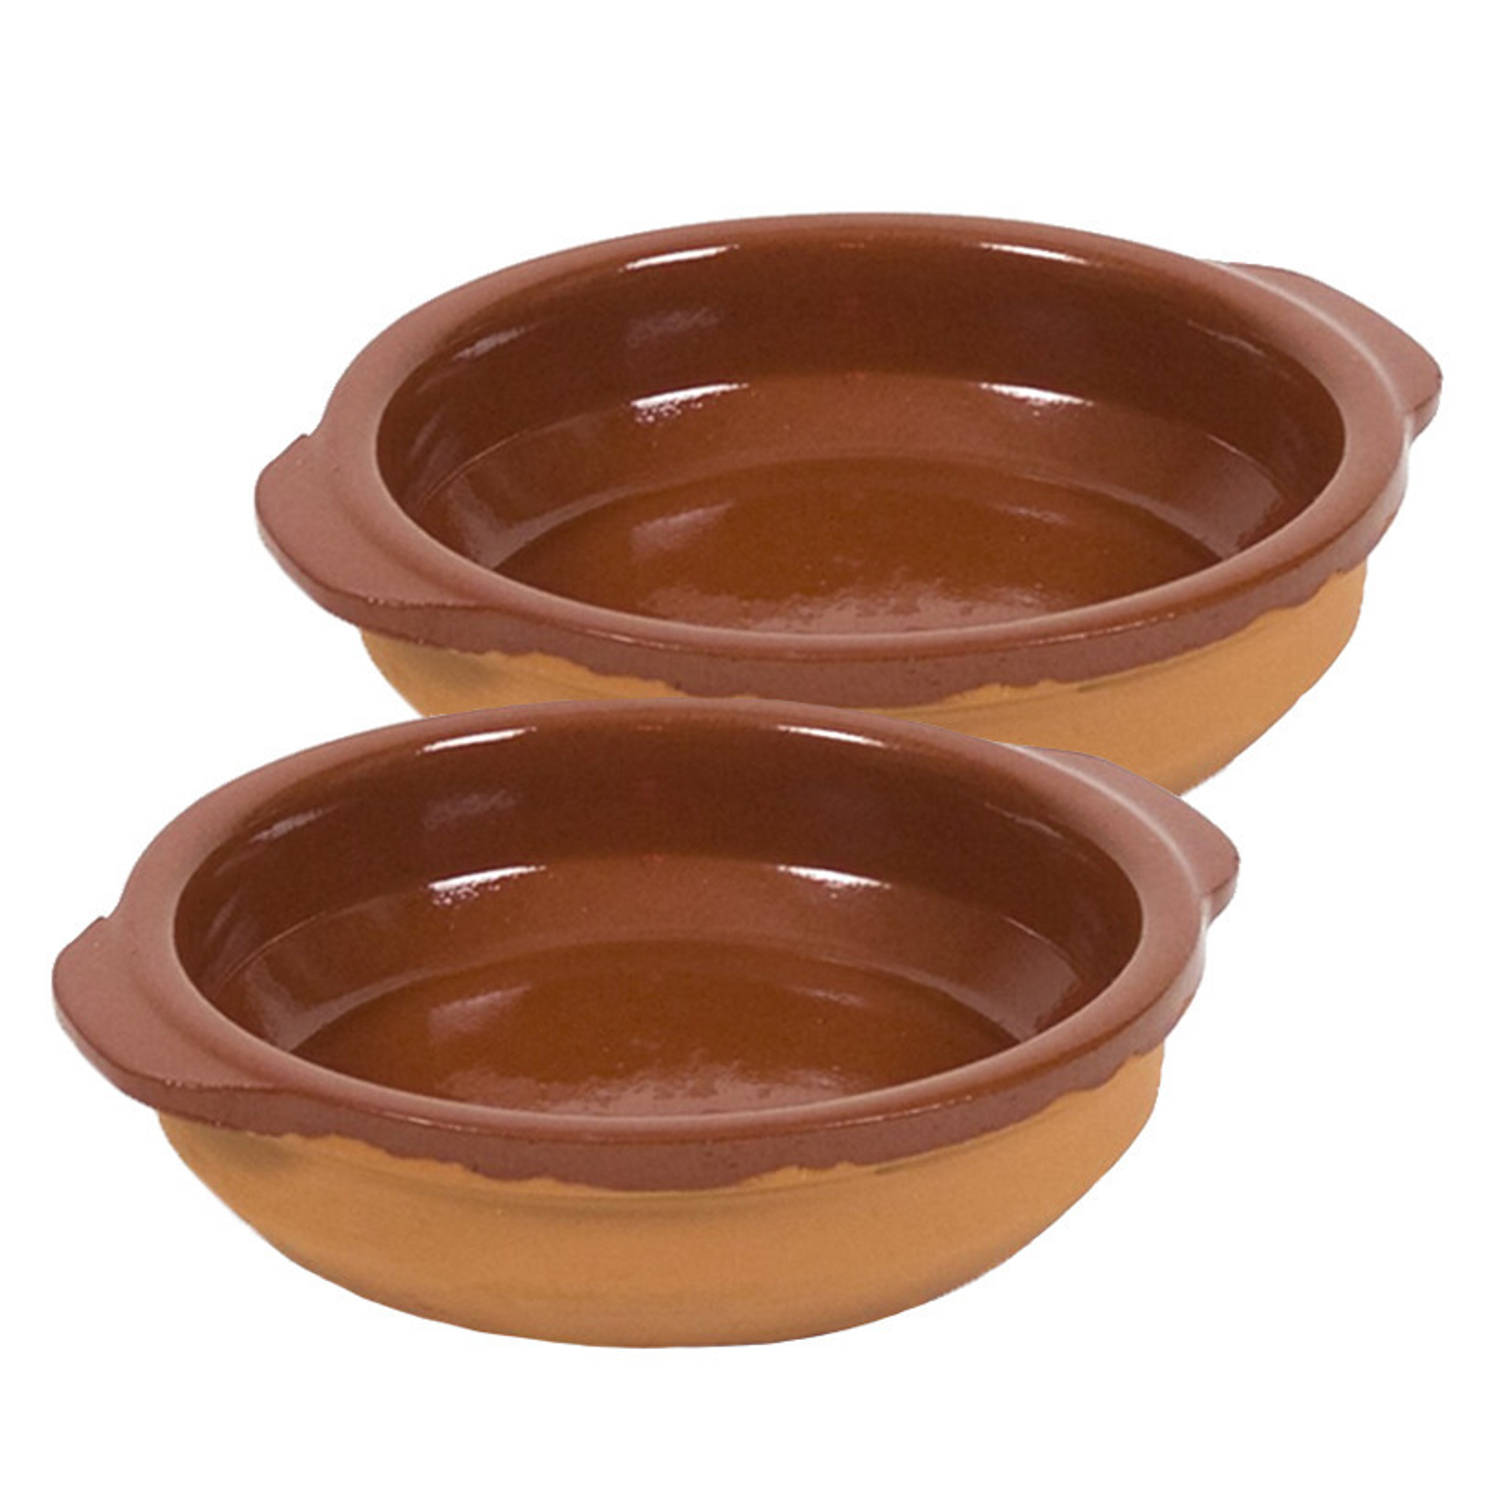 2x Terracotta tapas bakjes/schaaltjes 17 cm - Snack en tapasschalen